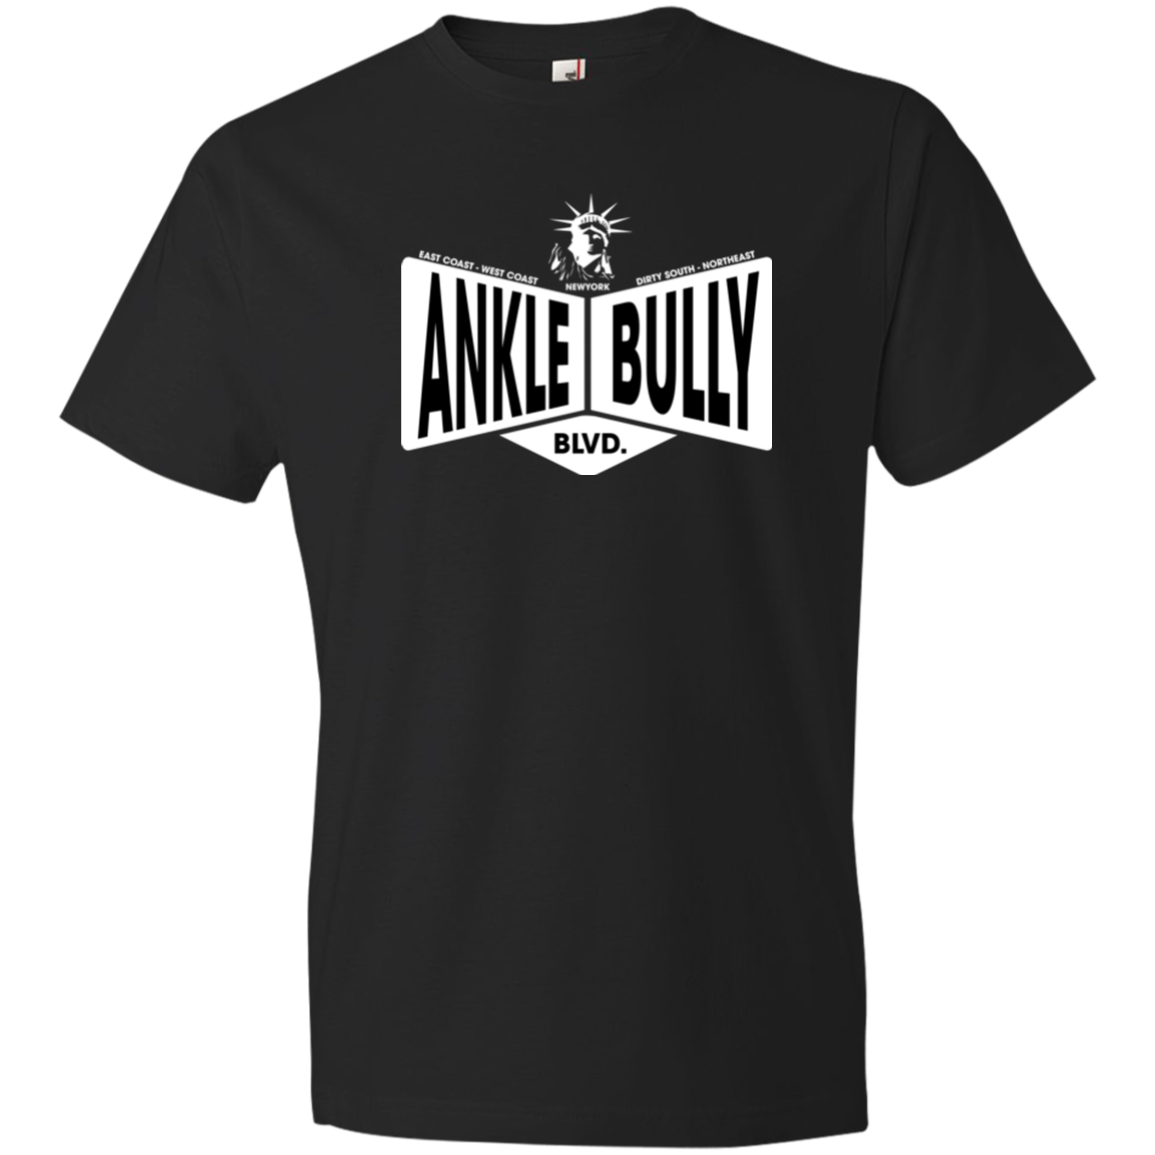 Ankle Bully Men's T-Shirt